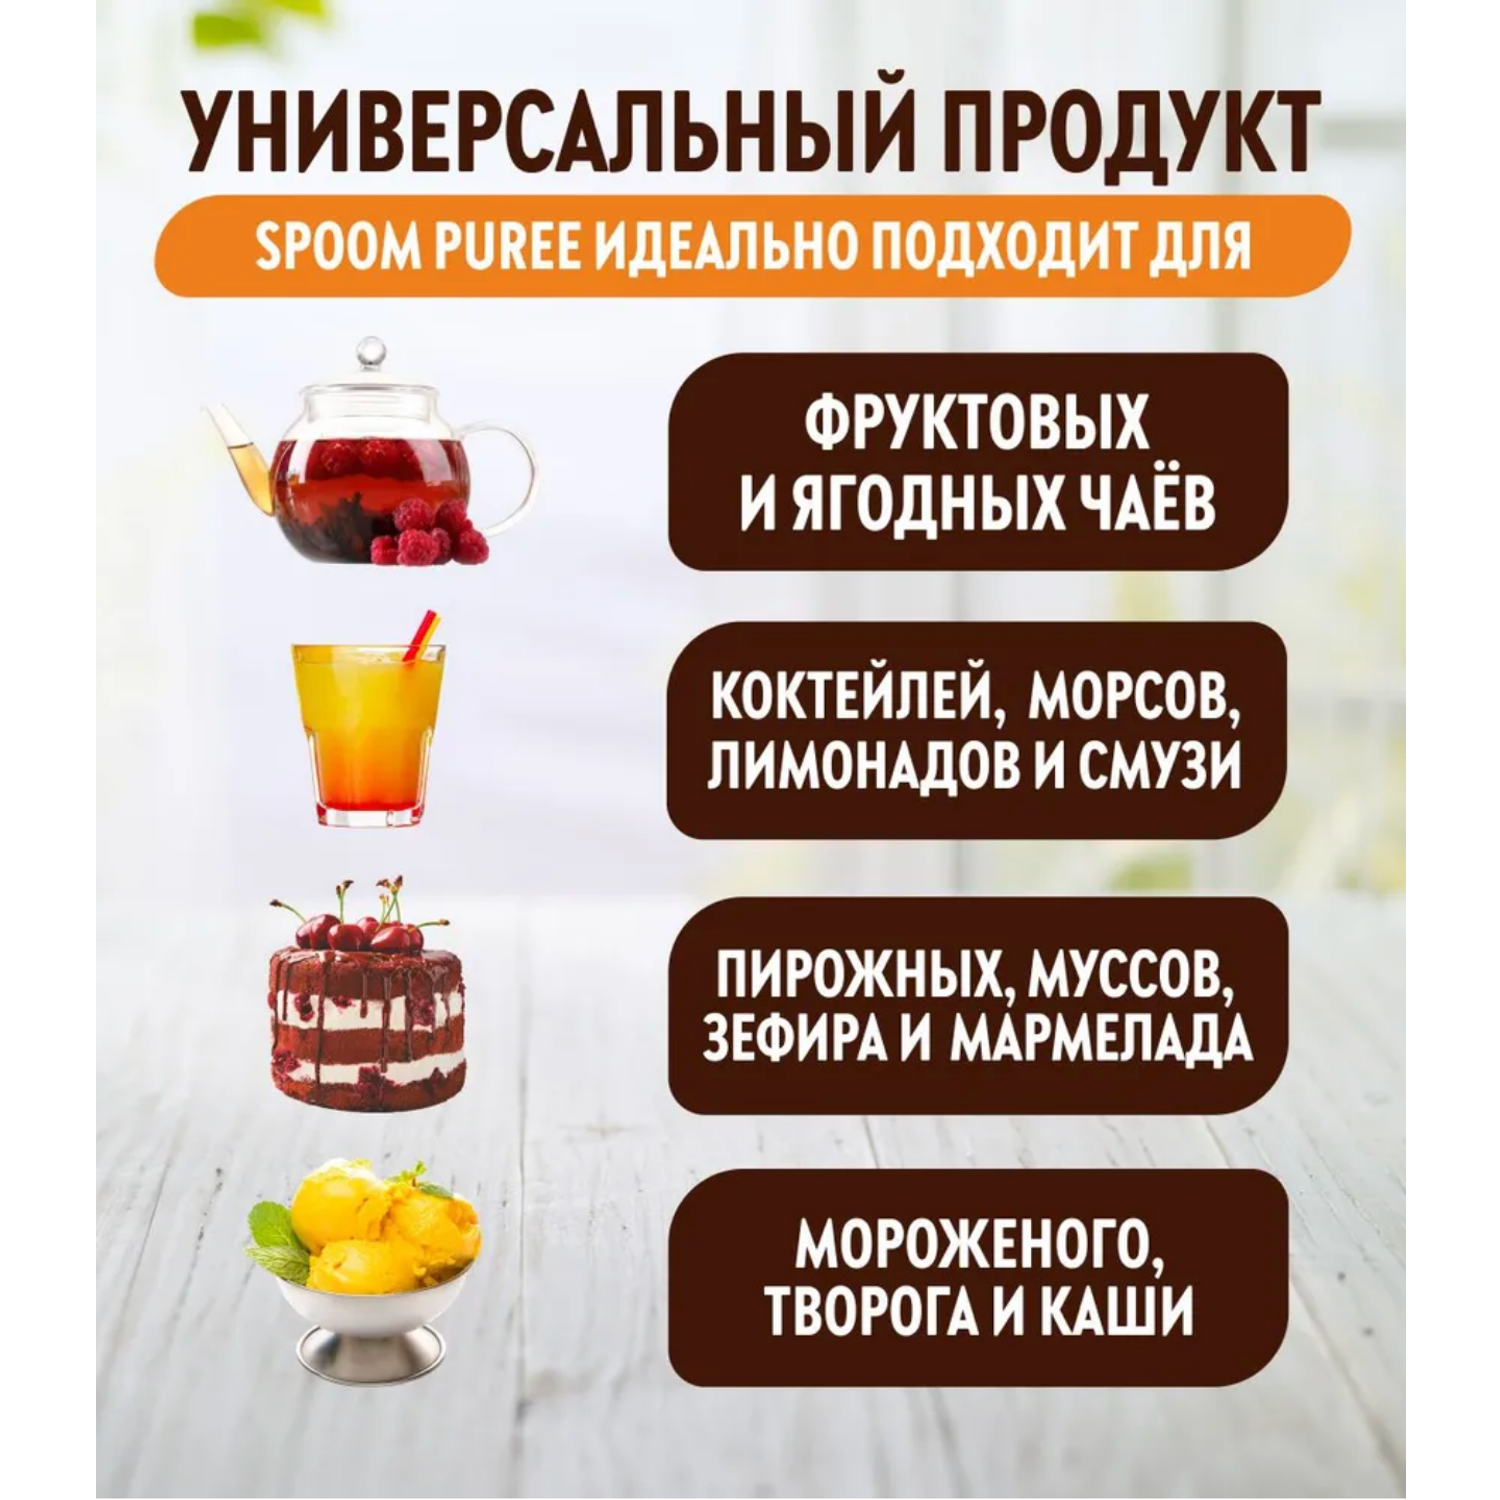 Натуральный концентрат SPOOM PUREE Облепиха 1кг основа для приготовления напитков и десертов - фото 2